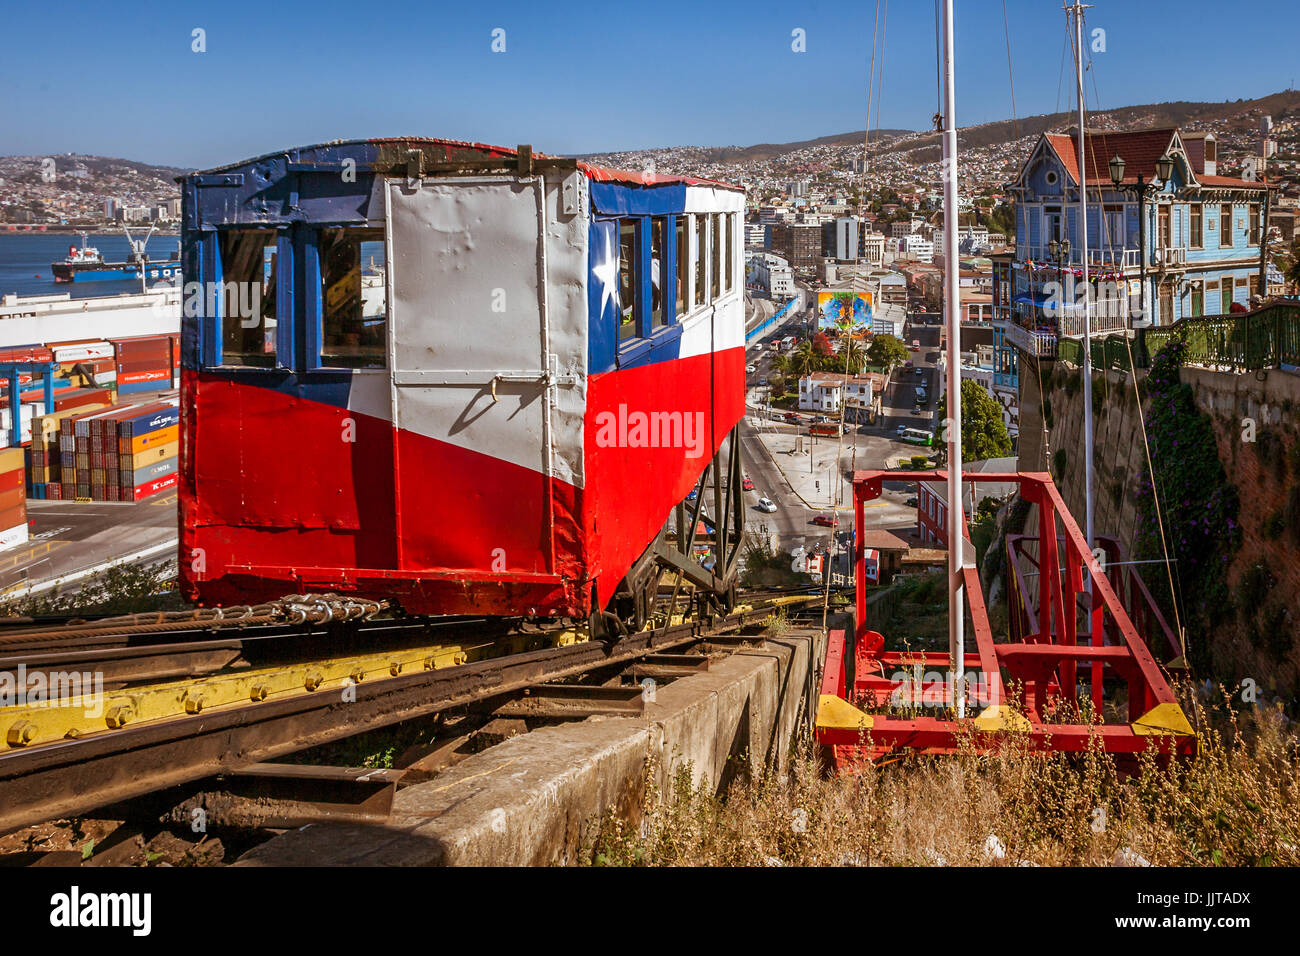 Valparaiso, Chili, le 11 janvier 2017 : arrivée de l'ascenseur Artillería dans la station. Monument historique construit en 1893. Sa décoration représente Banque D'Images